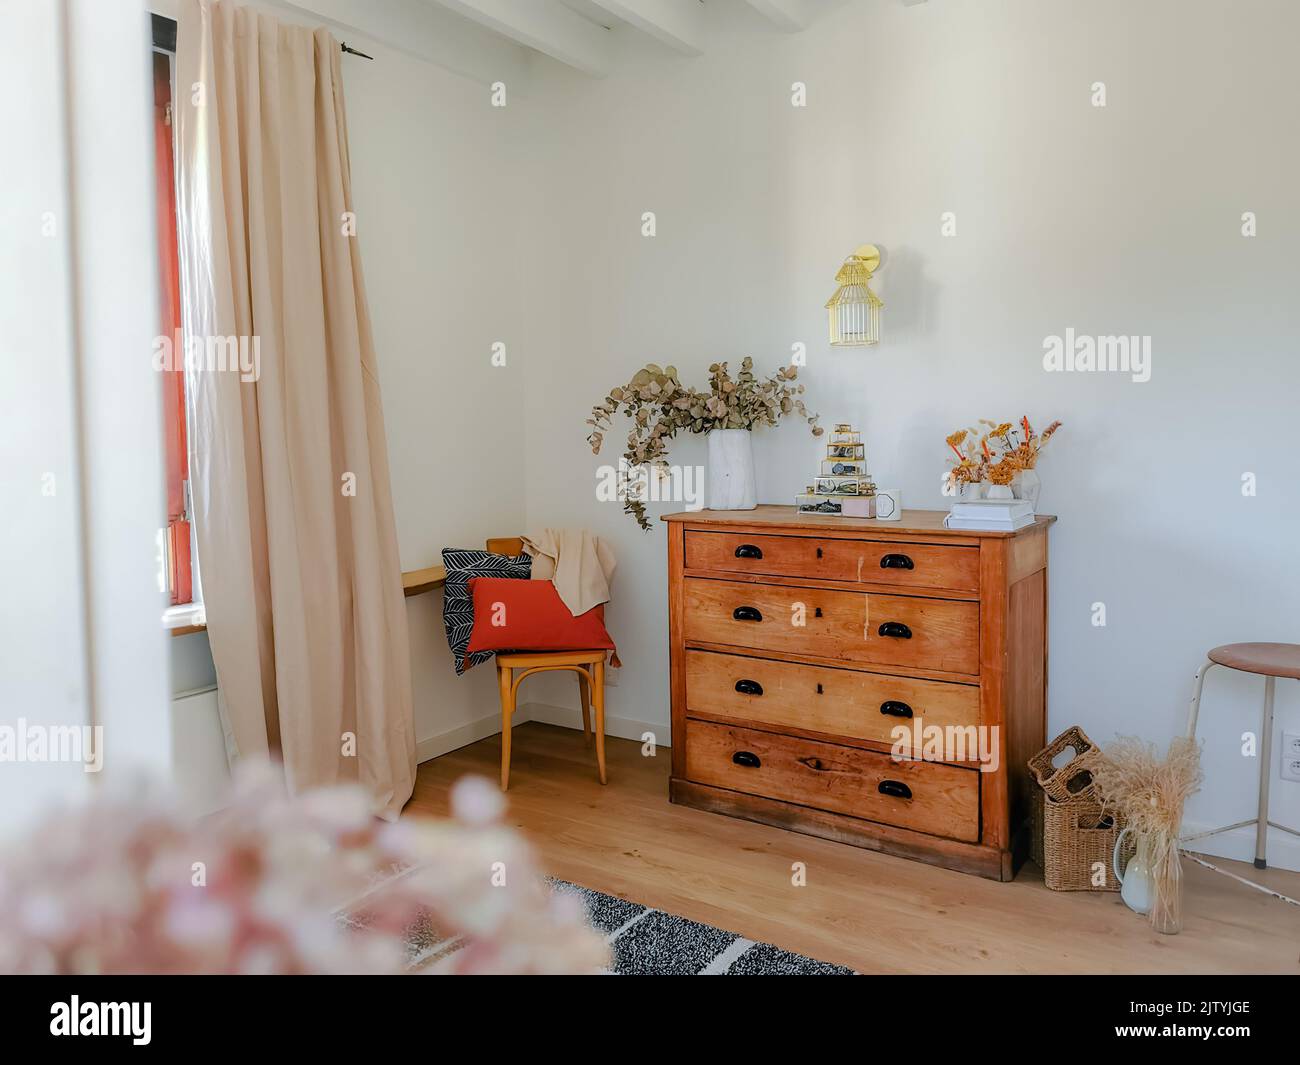 Interni accoglienti in tonalità naturali con mobili in legno antico, soffitti con travi a vista e fiori secchi come eucalipto. Design rustico moderno. Foto Stock